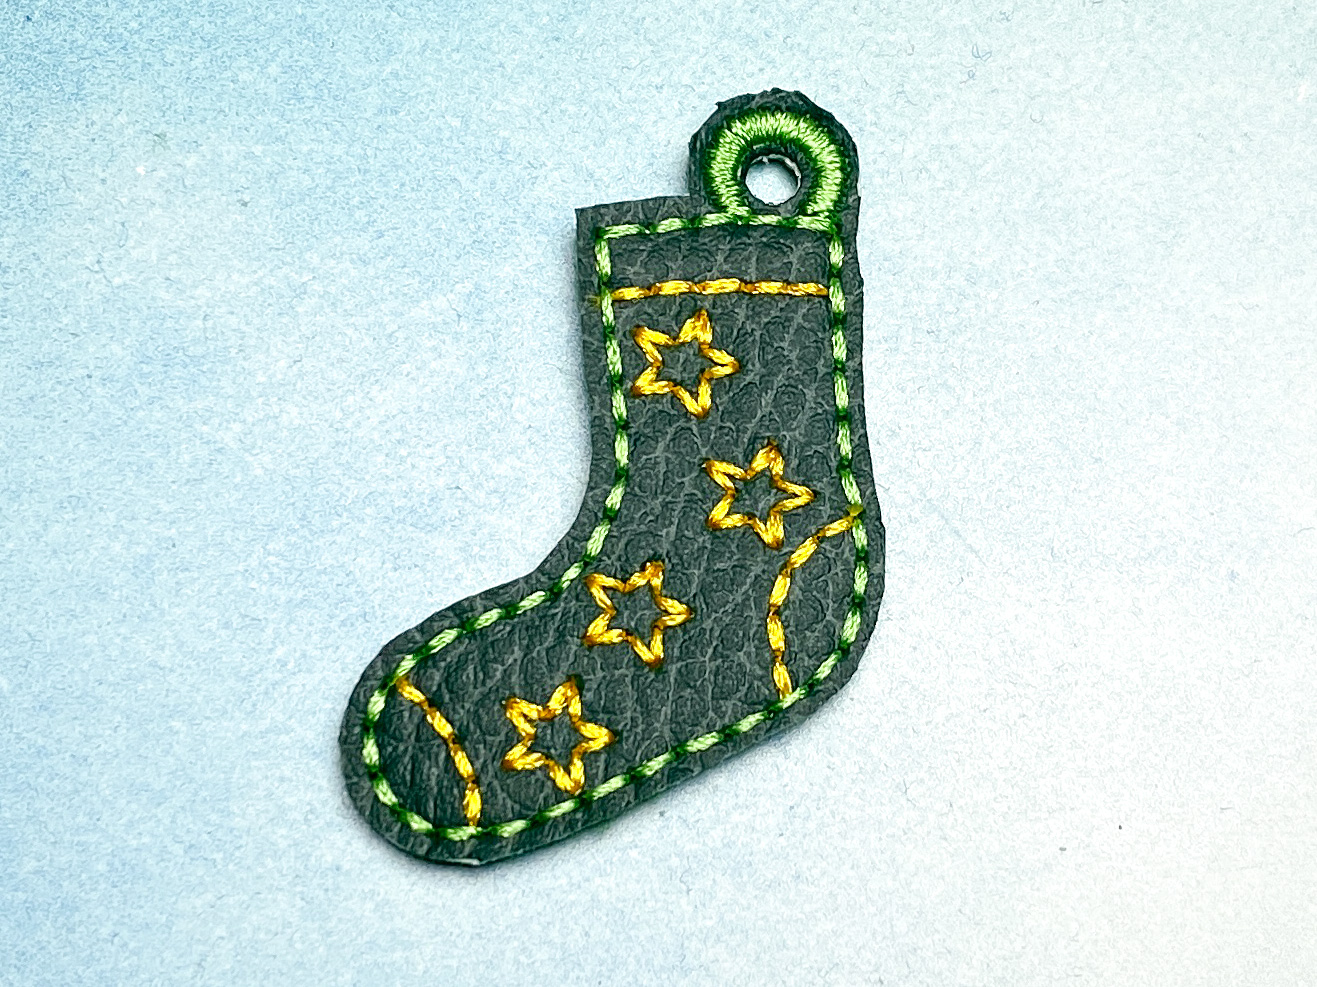 Schlüsselanhänger dunkelgrüne Socke mit gelben Sternen -Welt Down Syndrom Tag